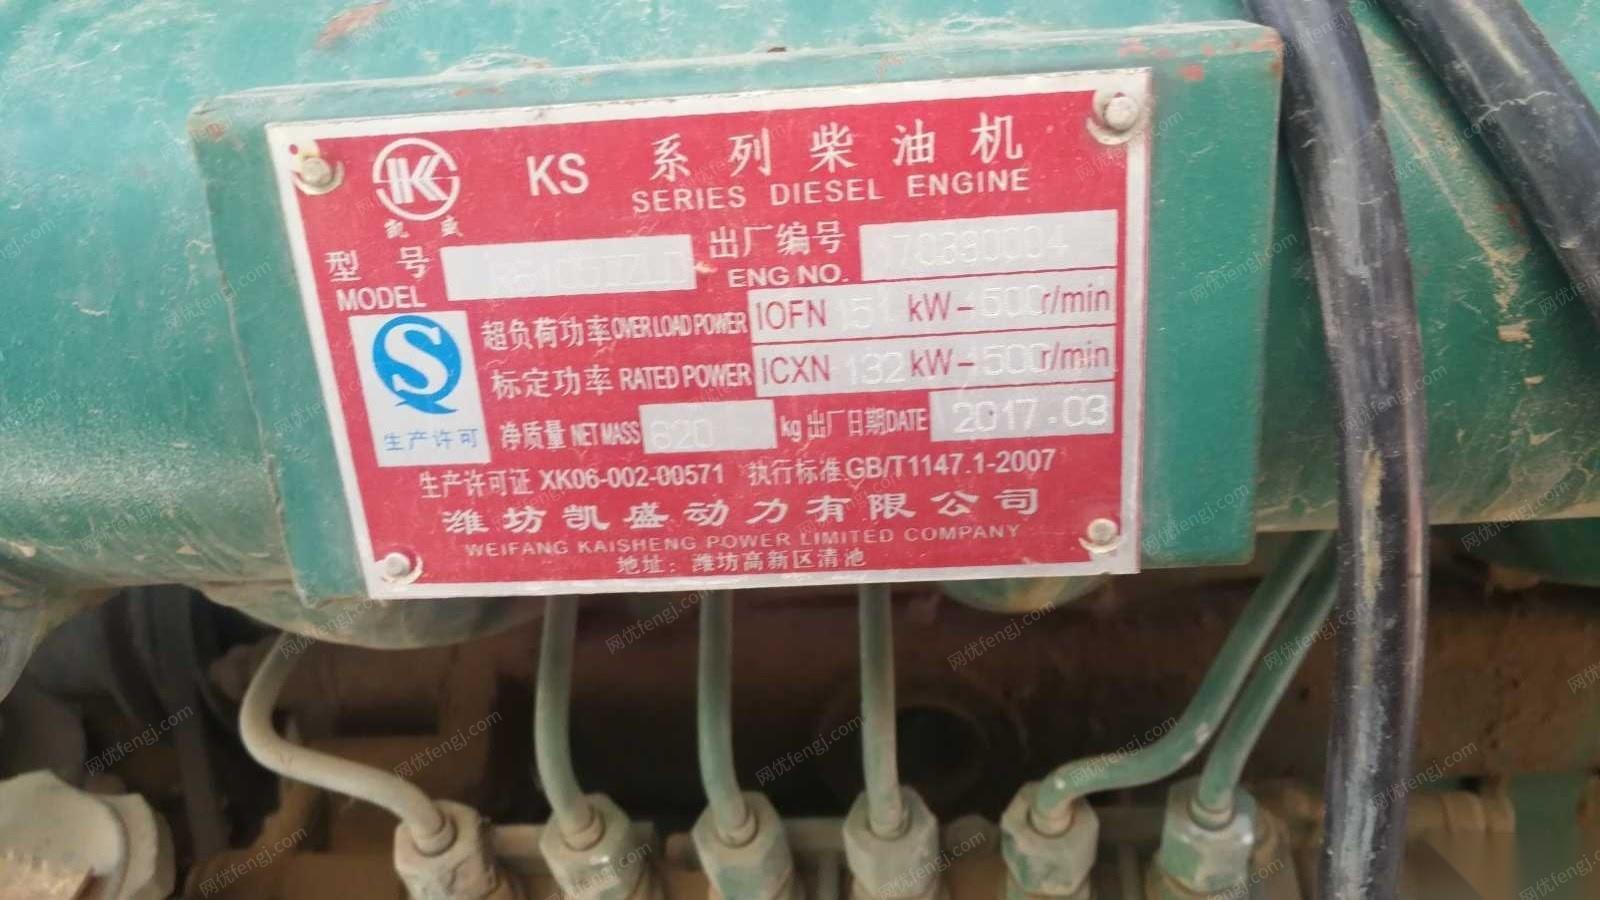 北京房山区出售1台17年120kw柴油发电机组 出售价18500元